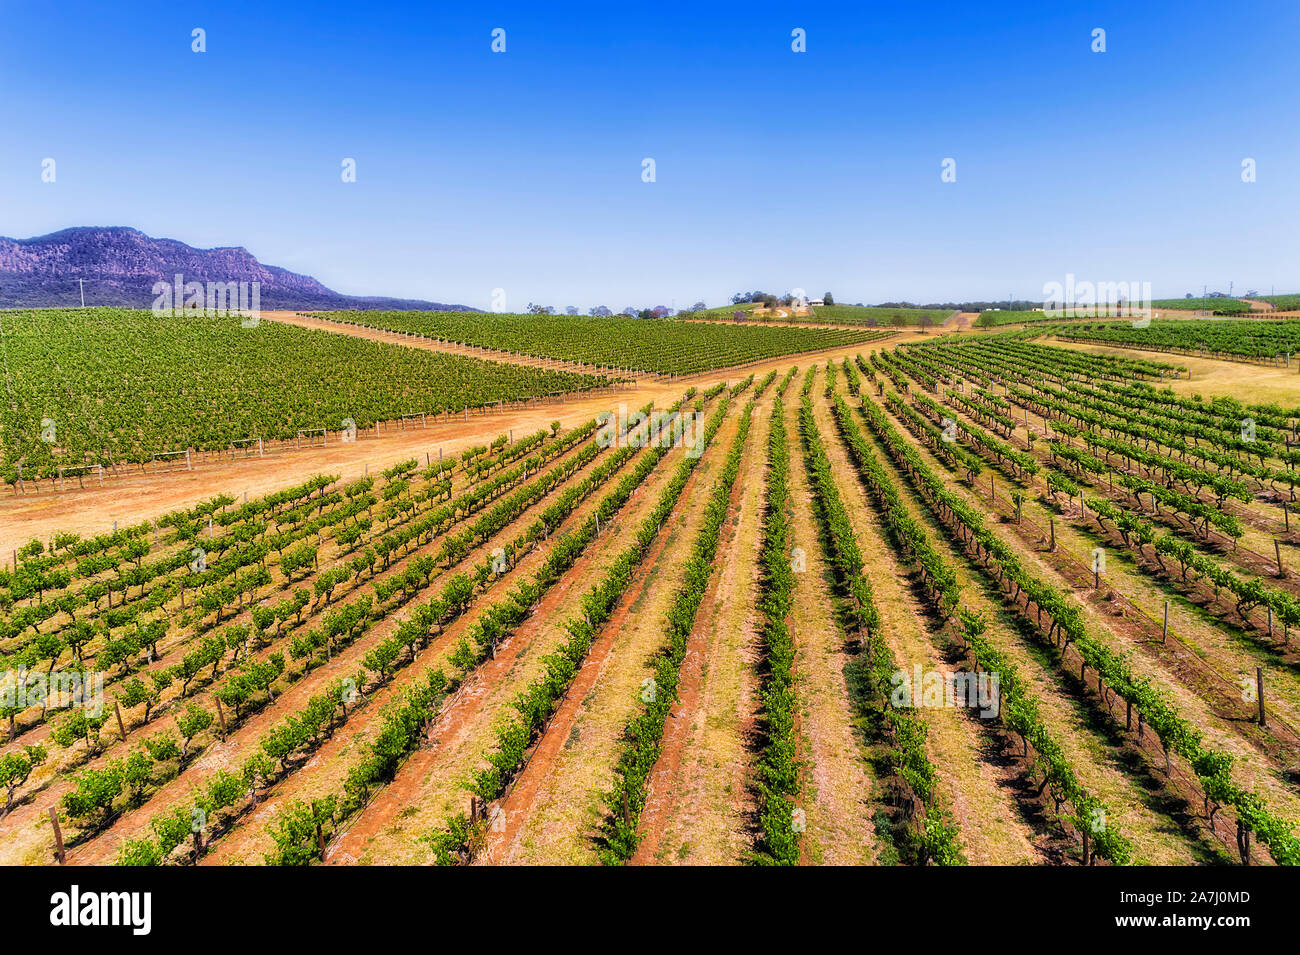 Hang des grünen jungen Weinberg Zeilen in Hunter Valley Weinregion Australiens mit Blick auf die fernen Berge - Luftbild persective entlang Str Stockfoto